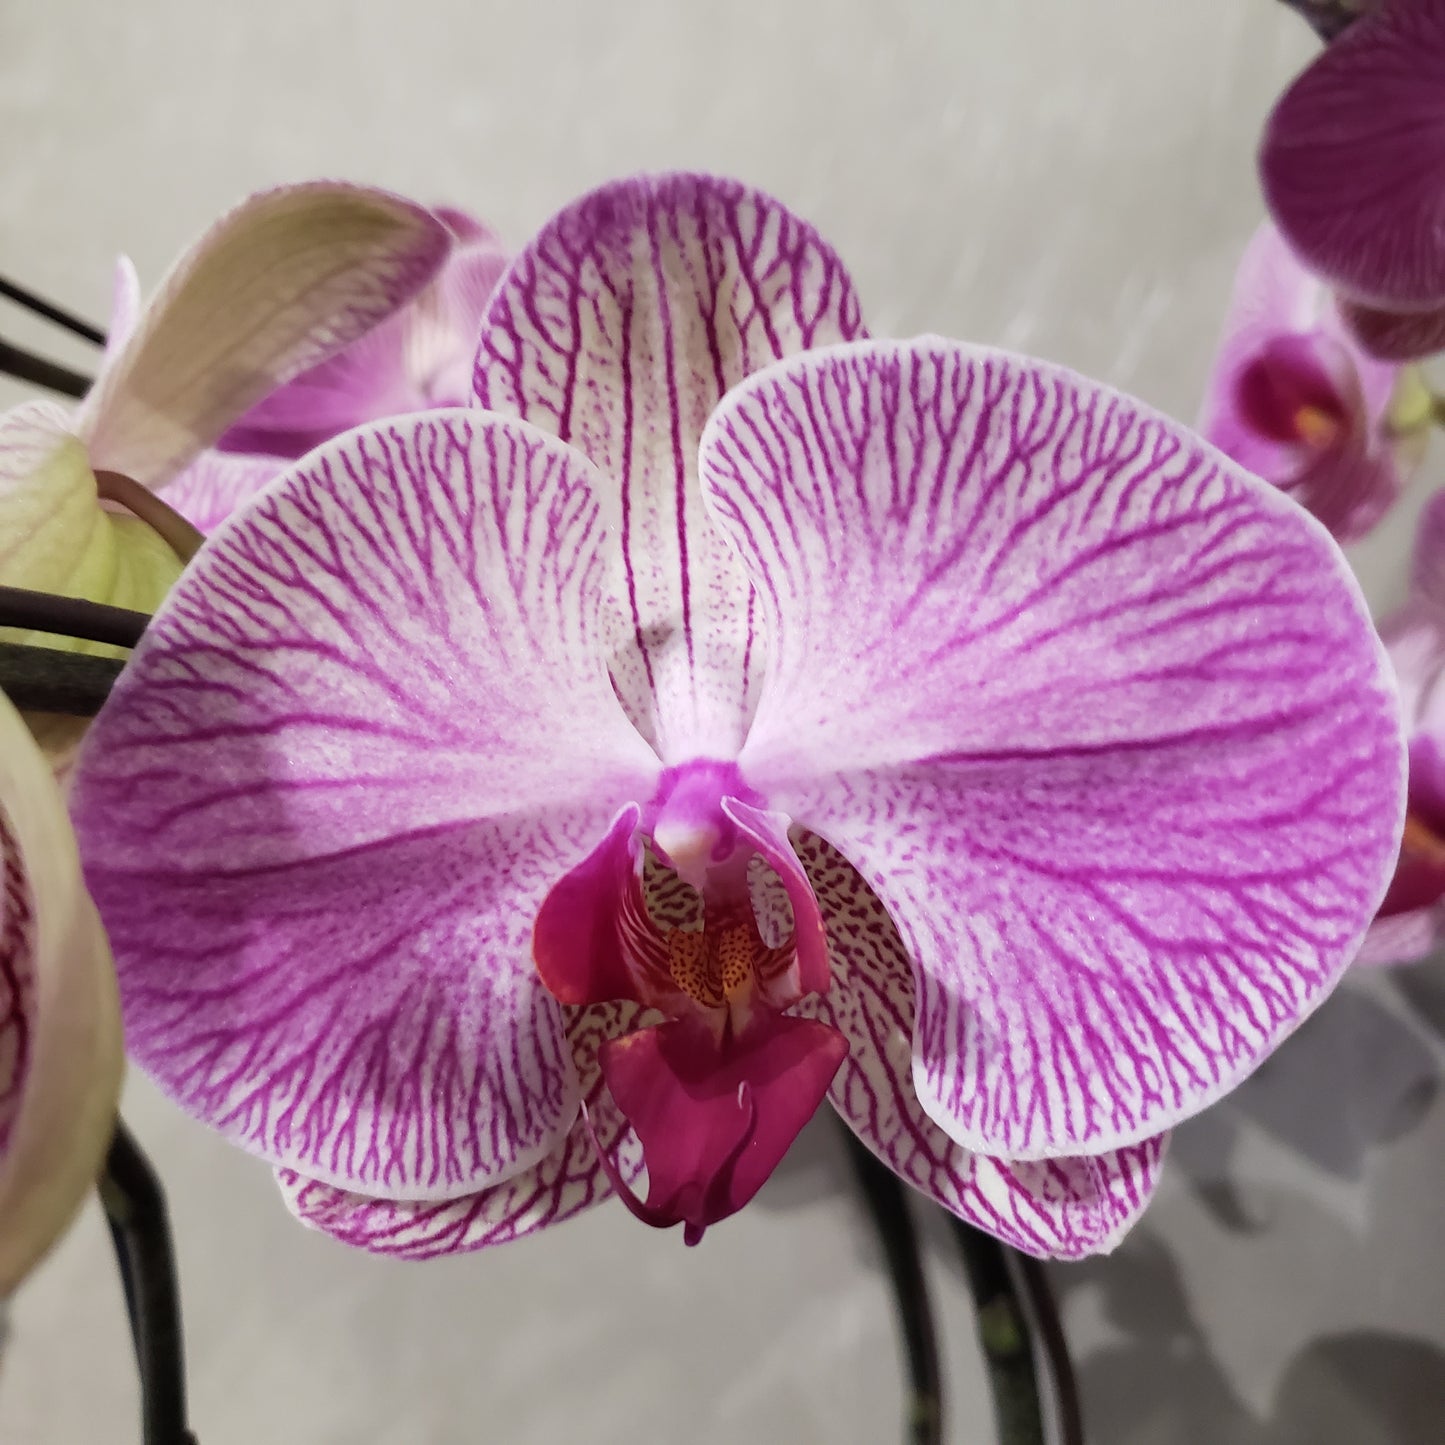 CNY012 - 12-stem Orchid Arrangement